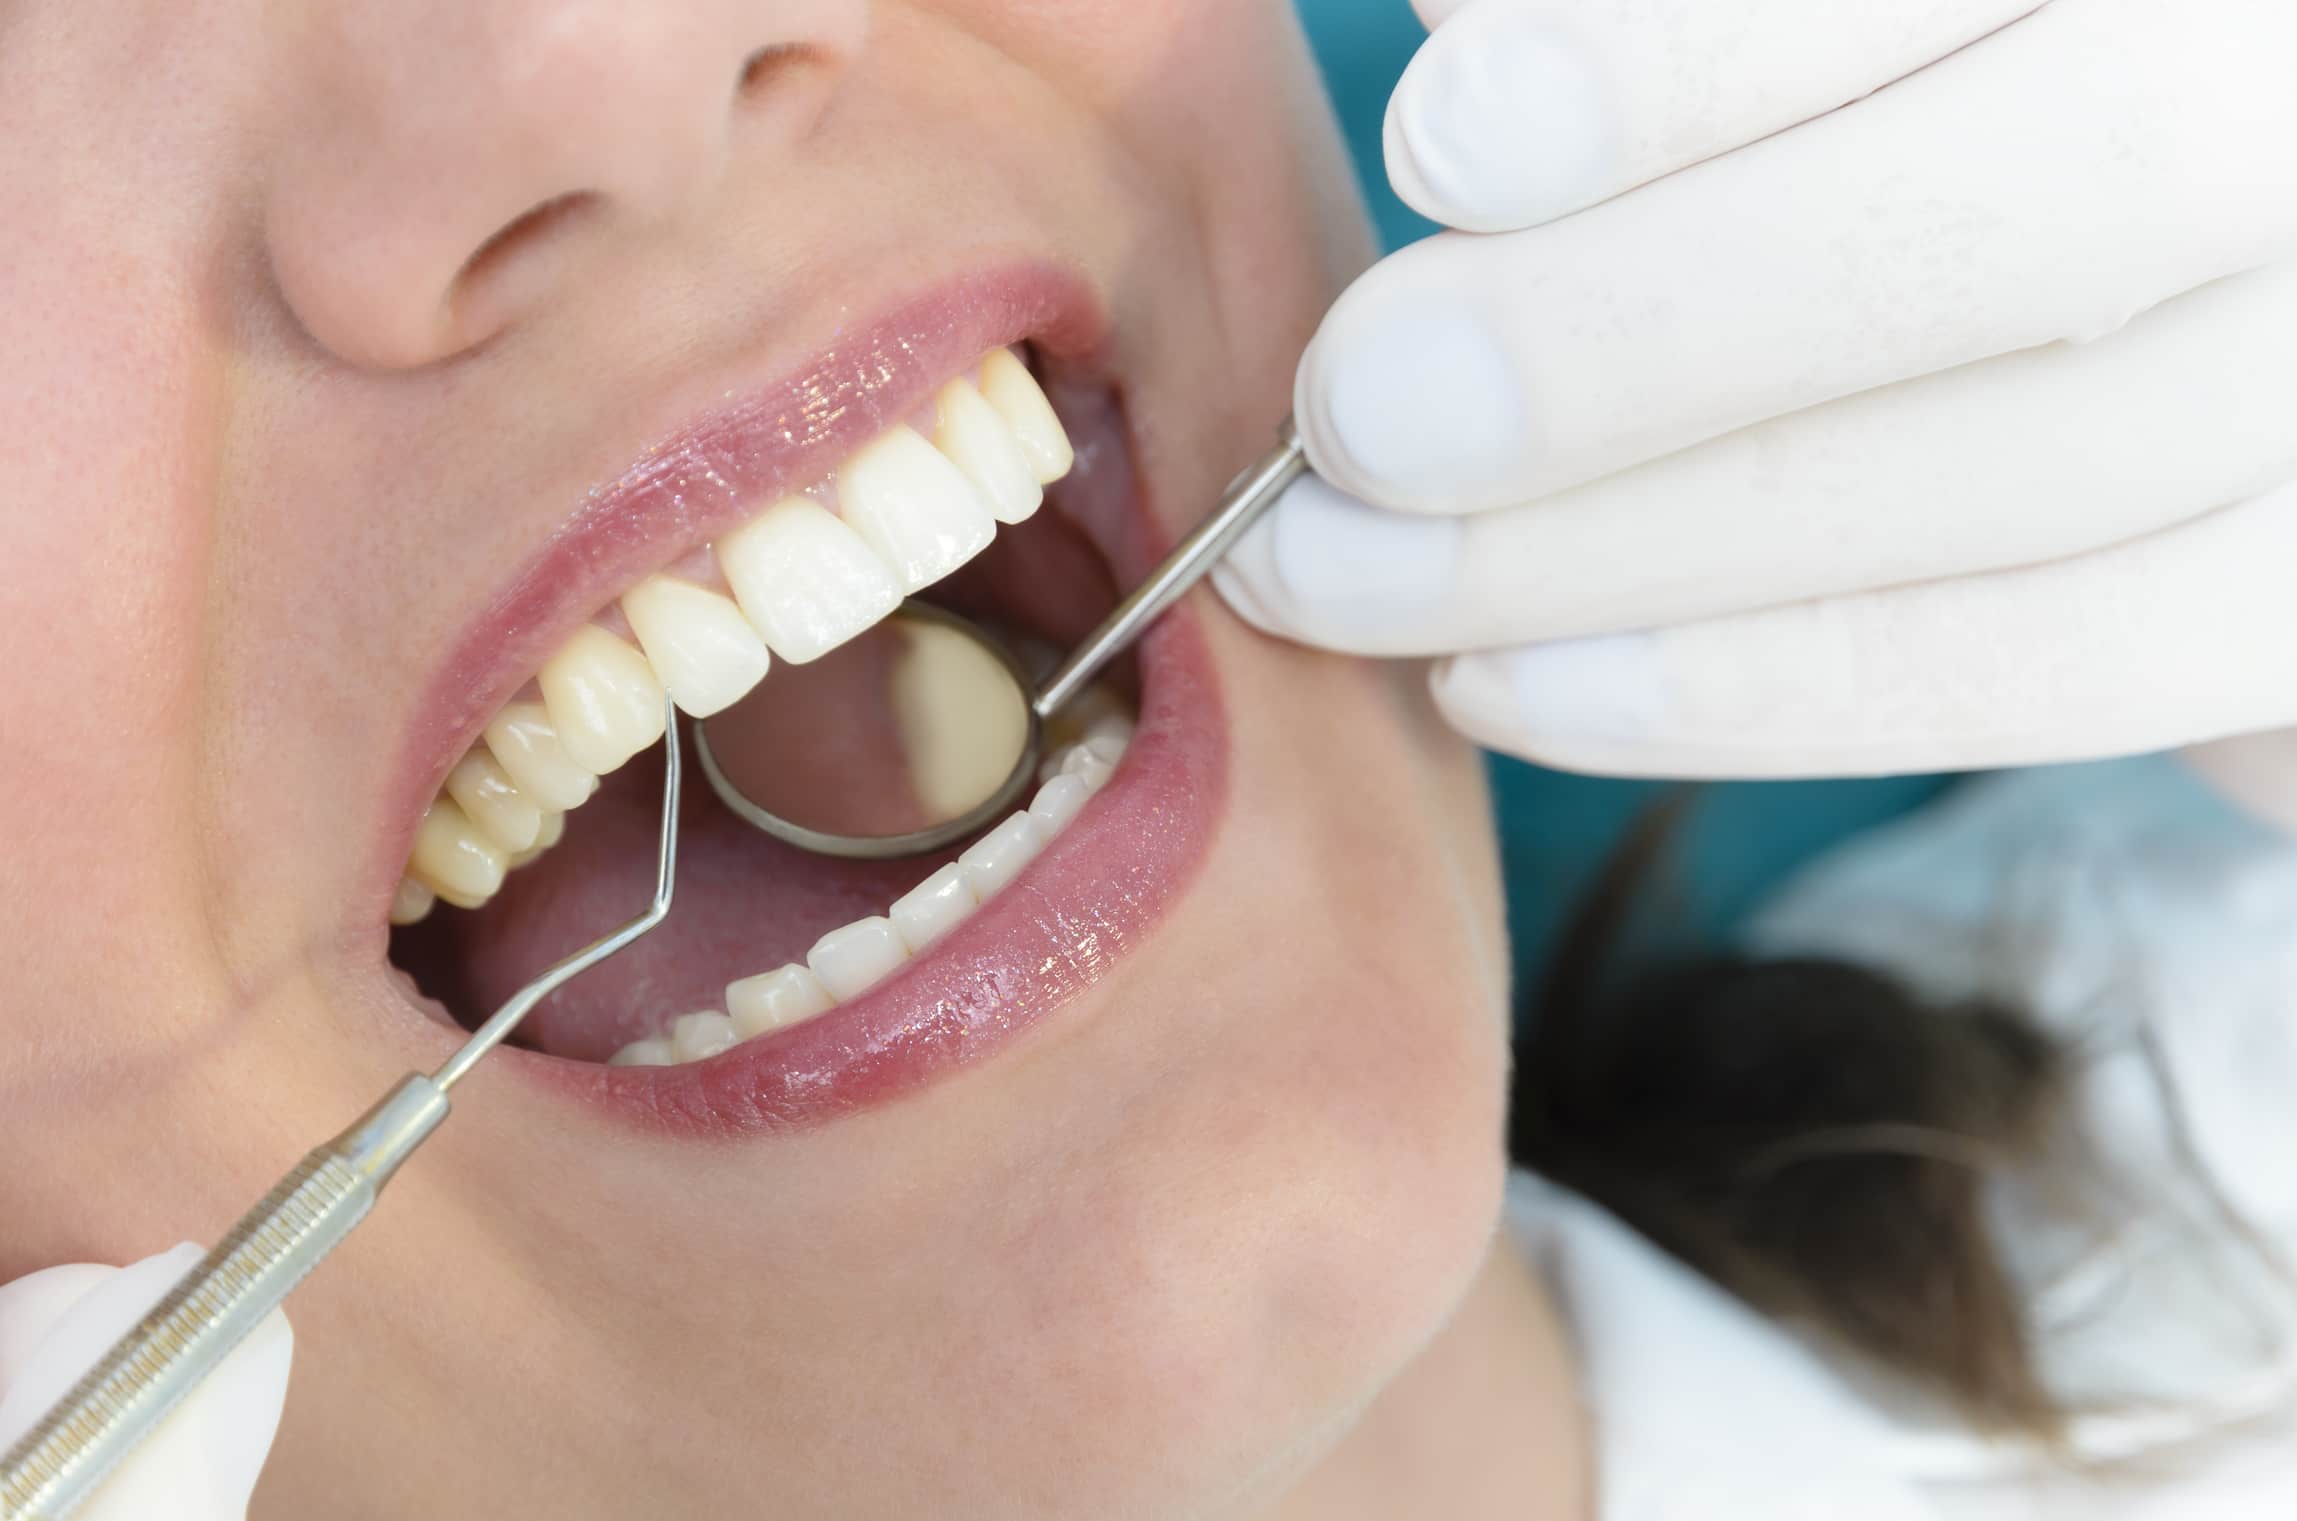 Turkiye periodontics treatment procedure